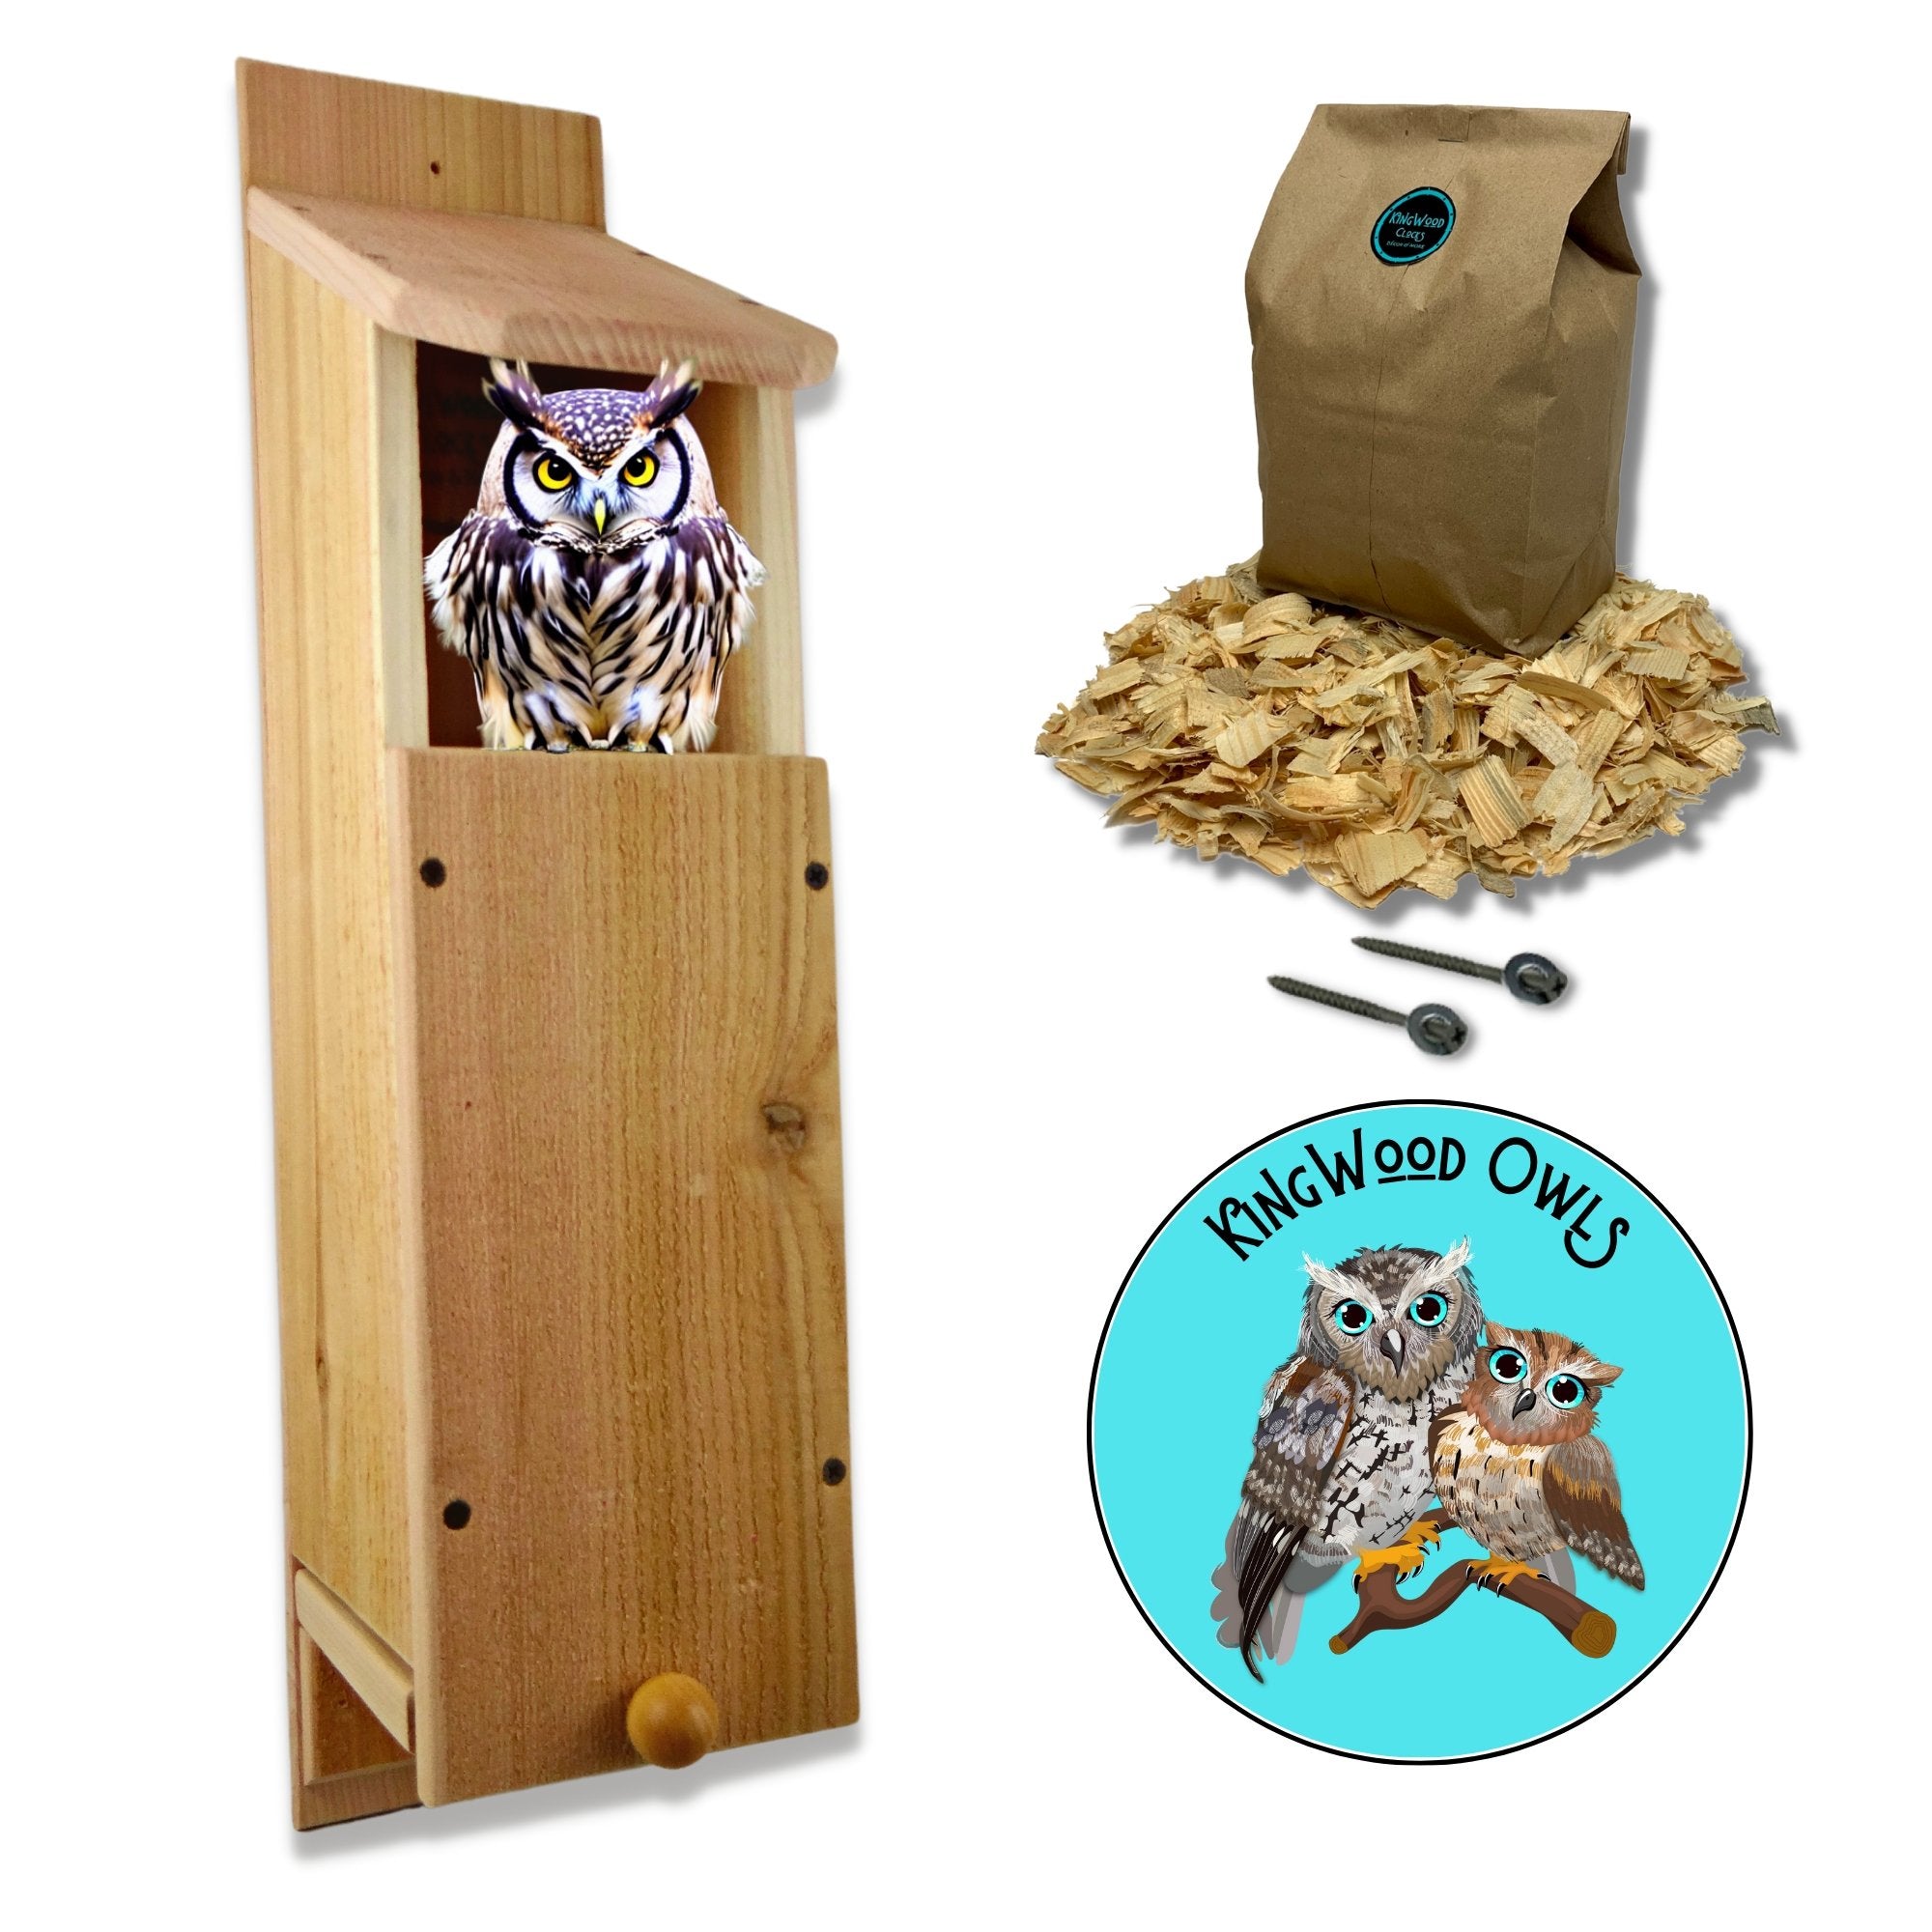 kingwood original cedar owl house box for nesting screech owls